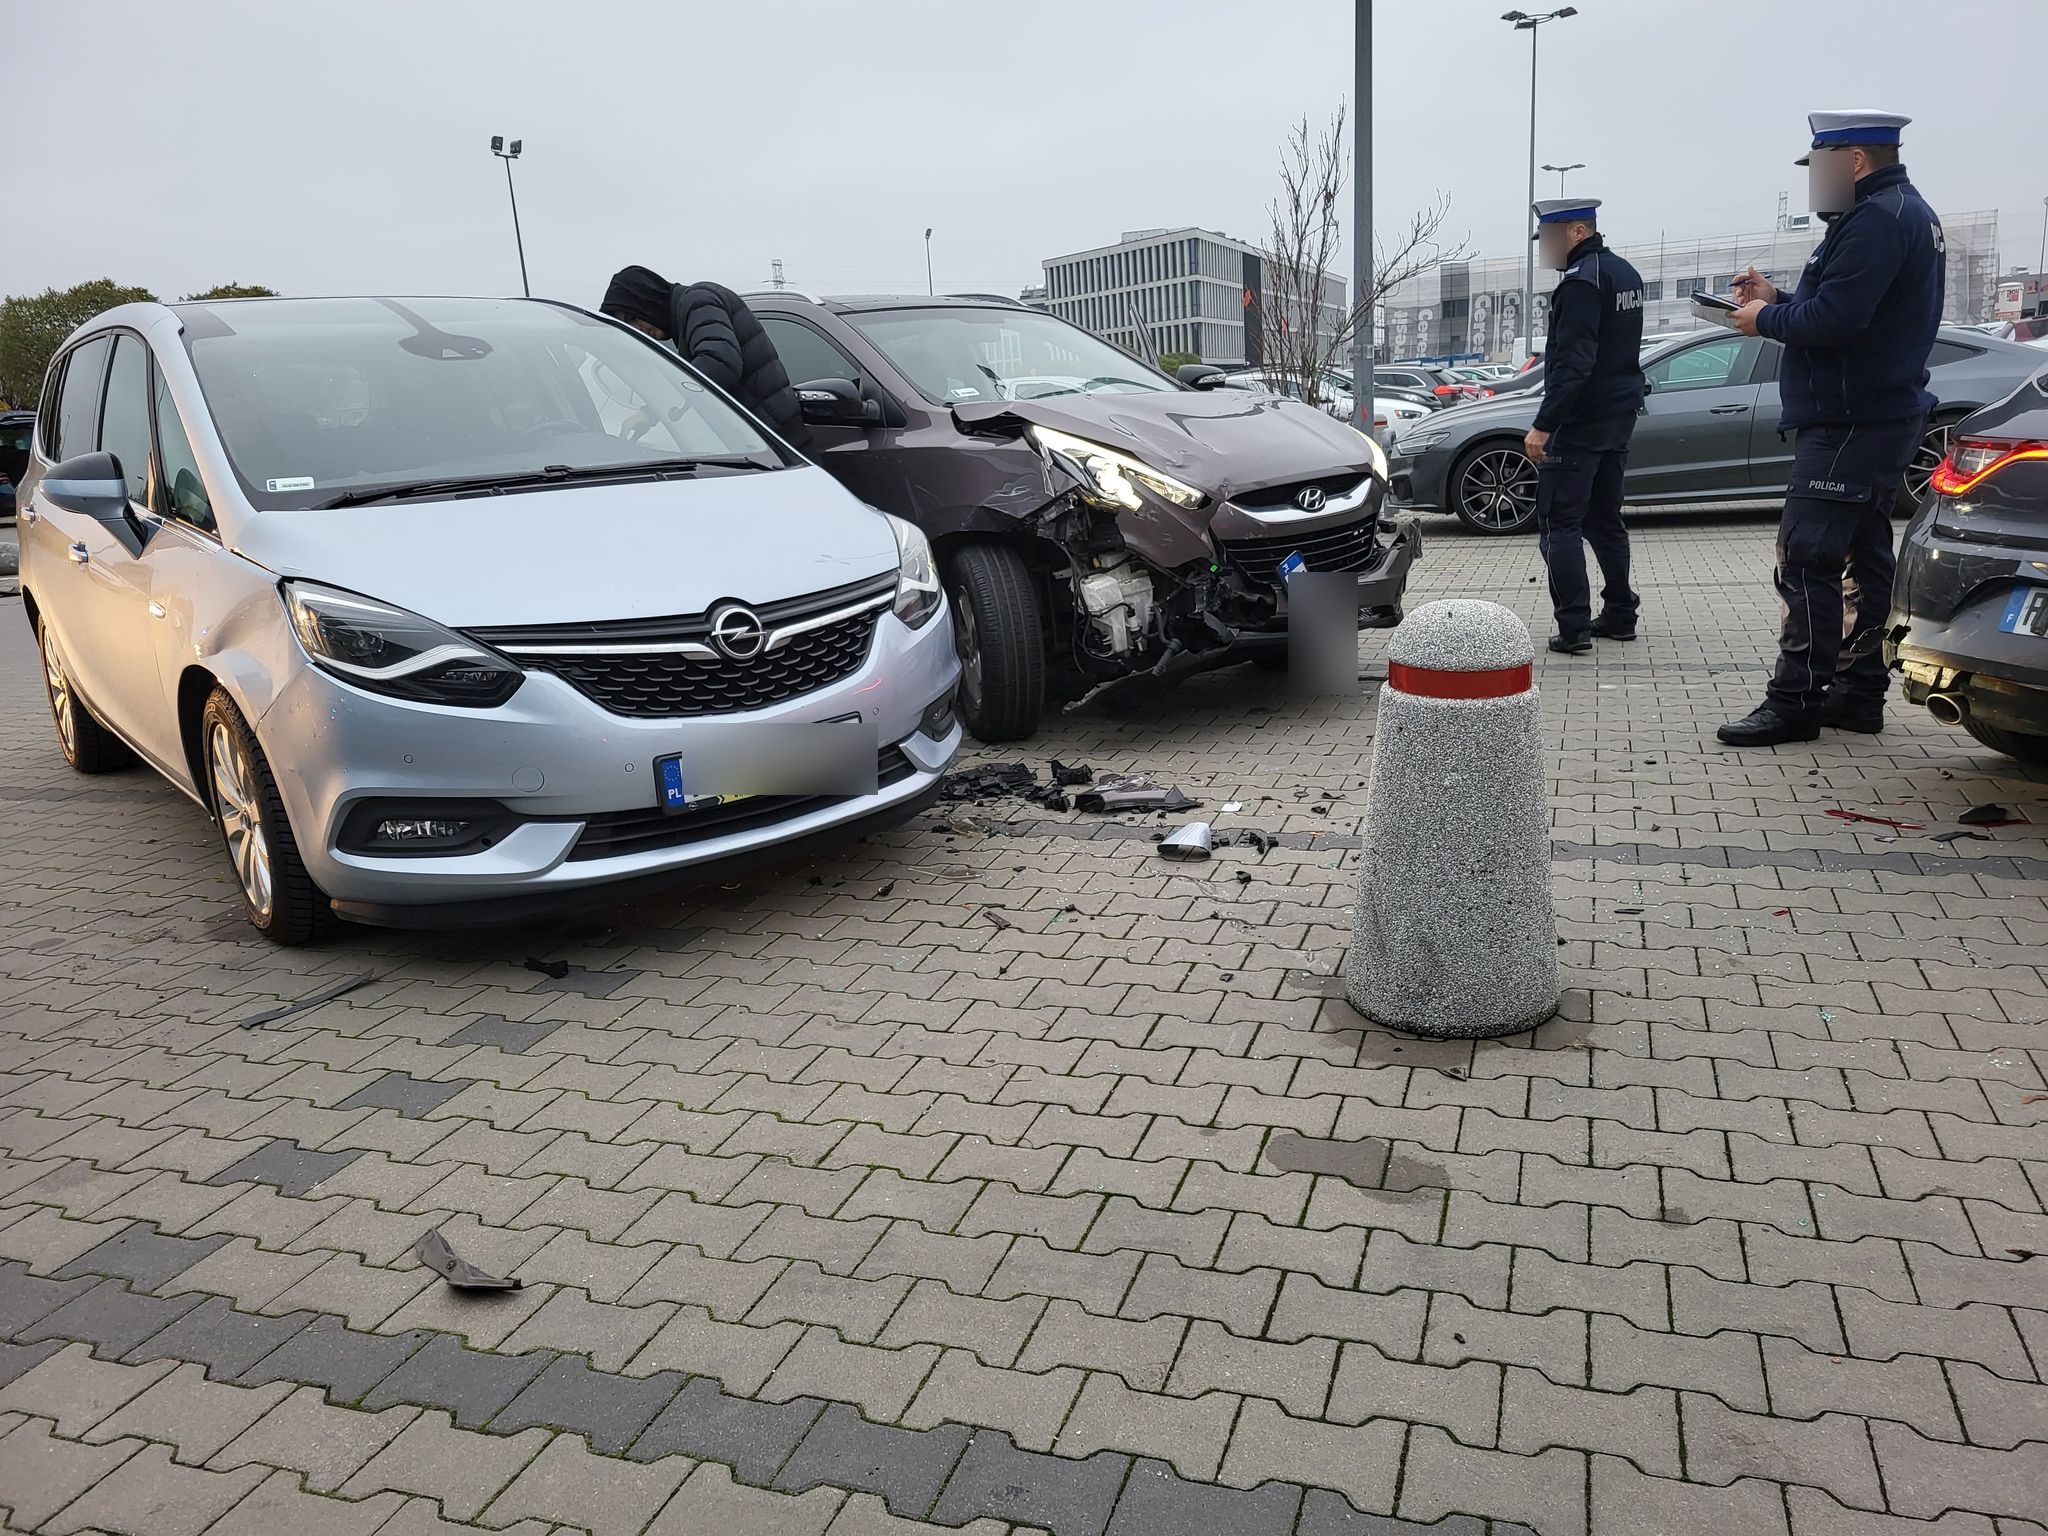 Wypadek na parkingu przed marketem. Pięć samochodów uszkodzonych i jedna osoba w szpitalu (zdjęcia)